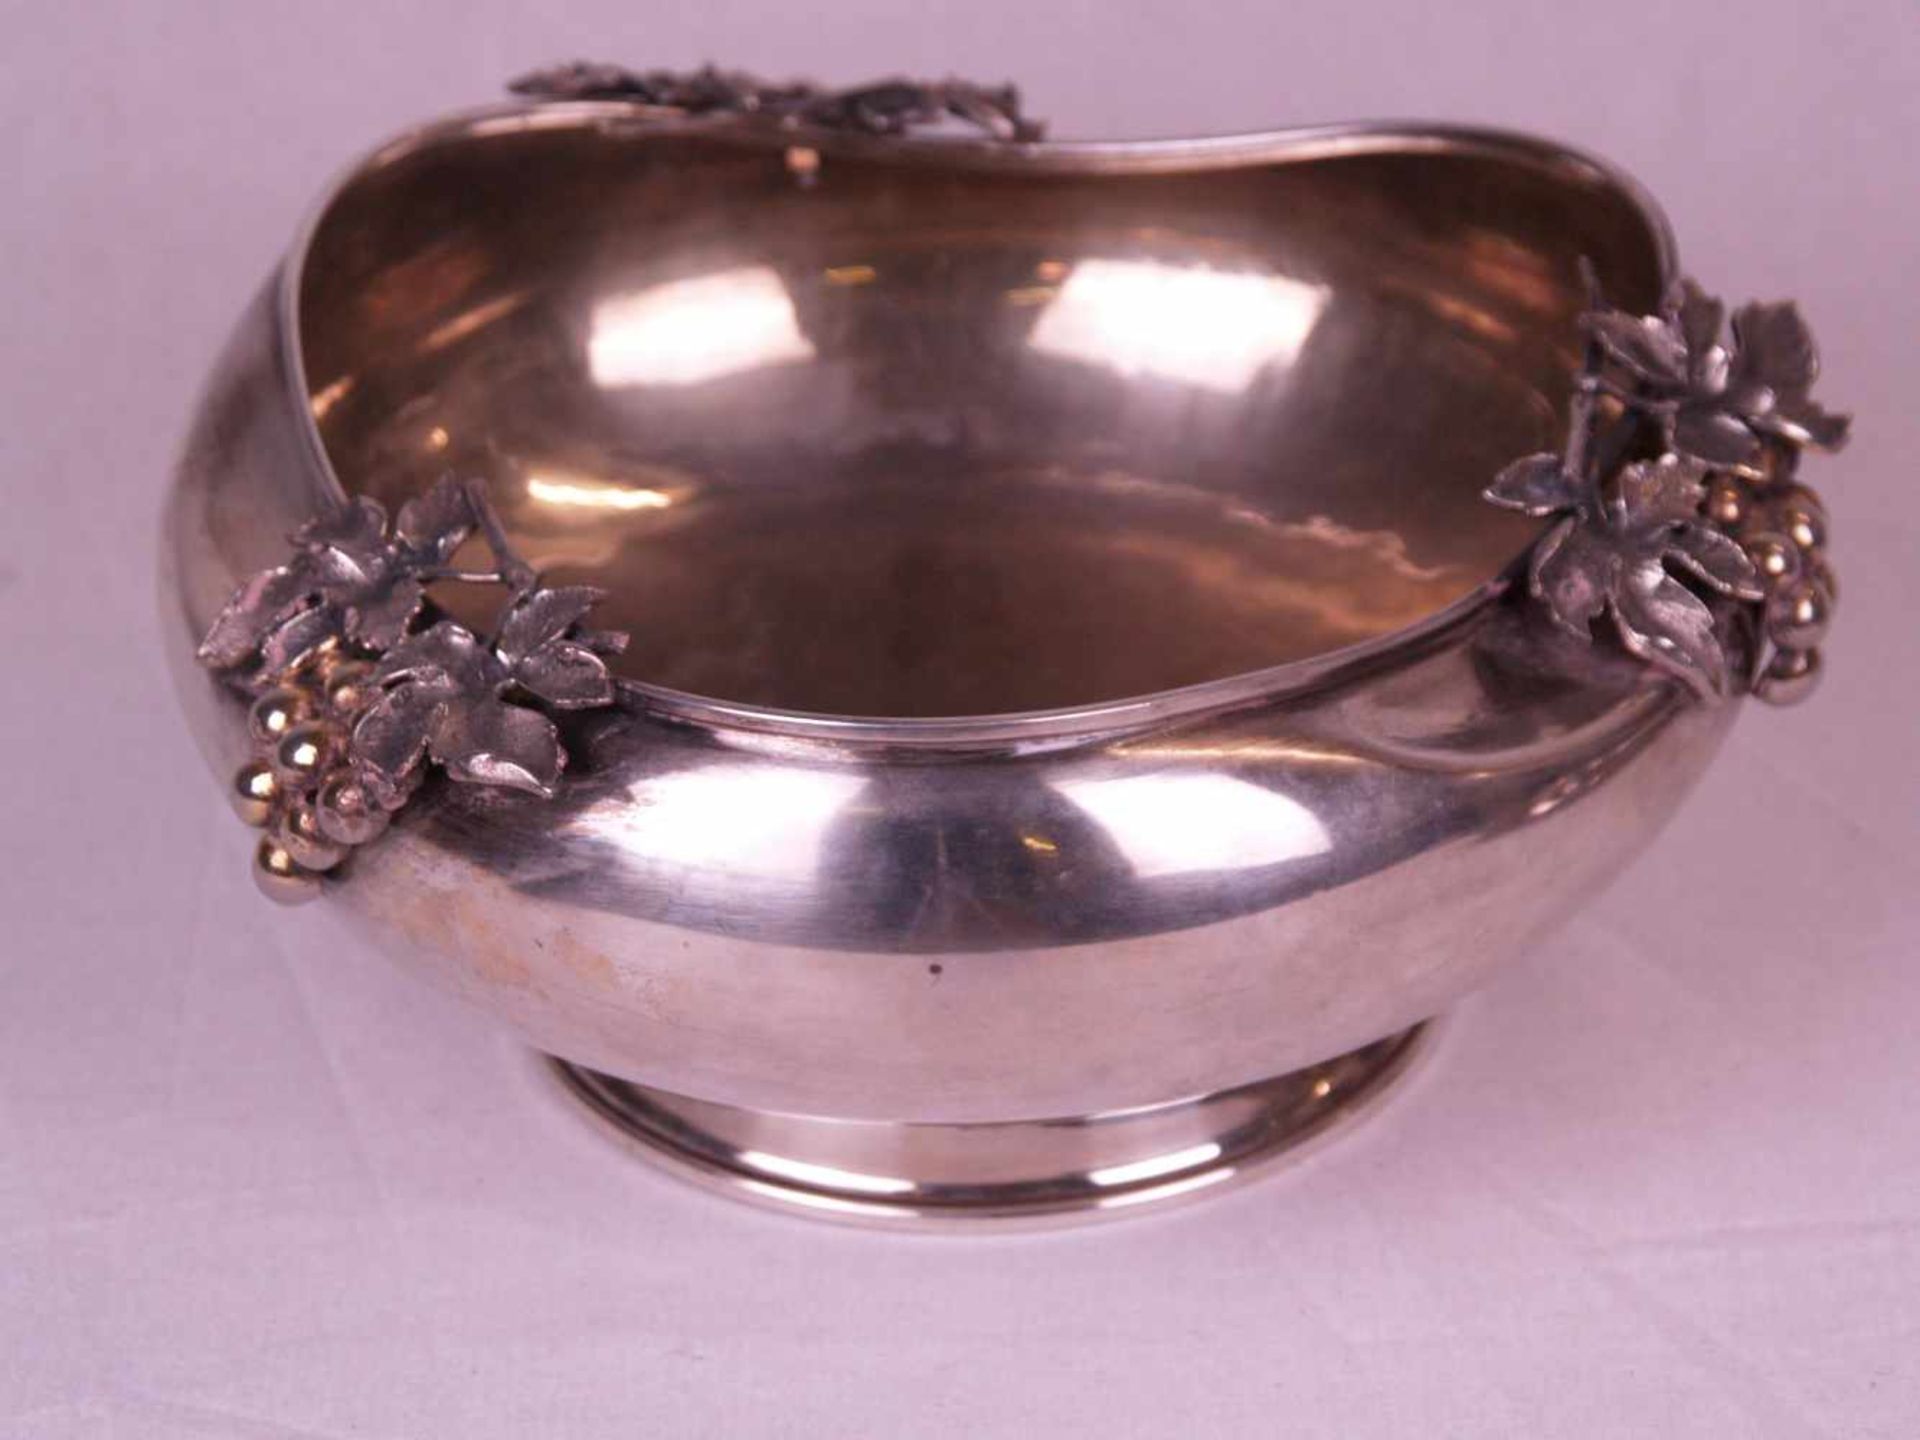 Obstschale mit Presentoir - 900er Silber,gepunzt,2-tlg,runde unregelmäßige Form mit gewelltem Rand, - Bild 2 aus 6